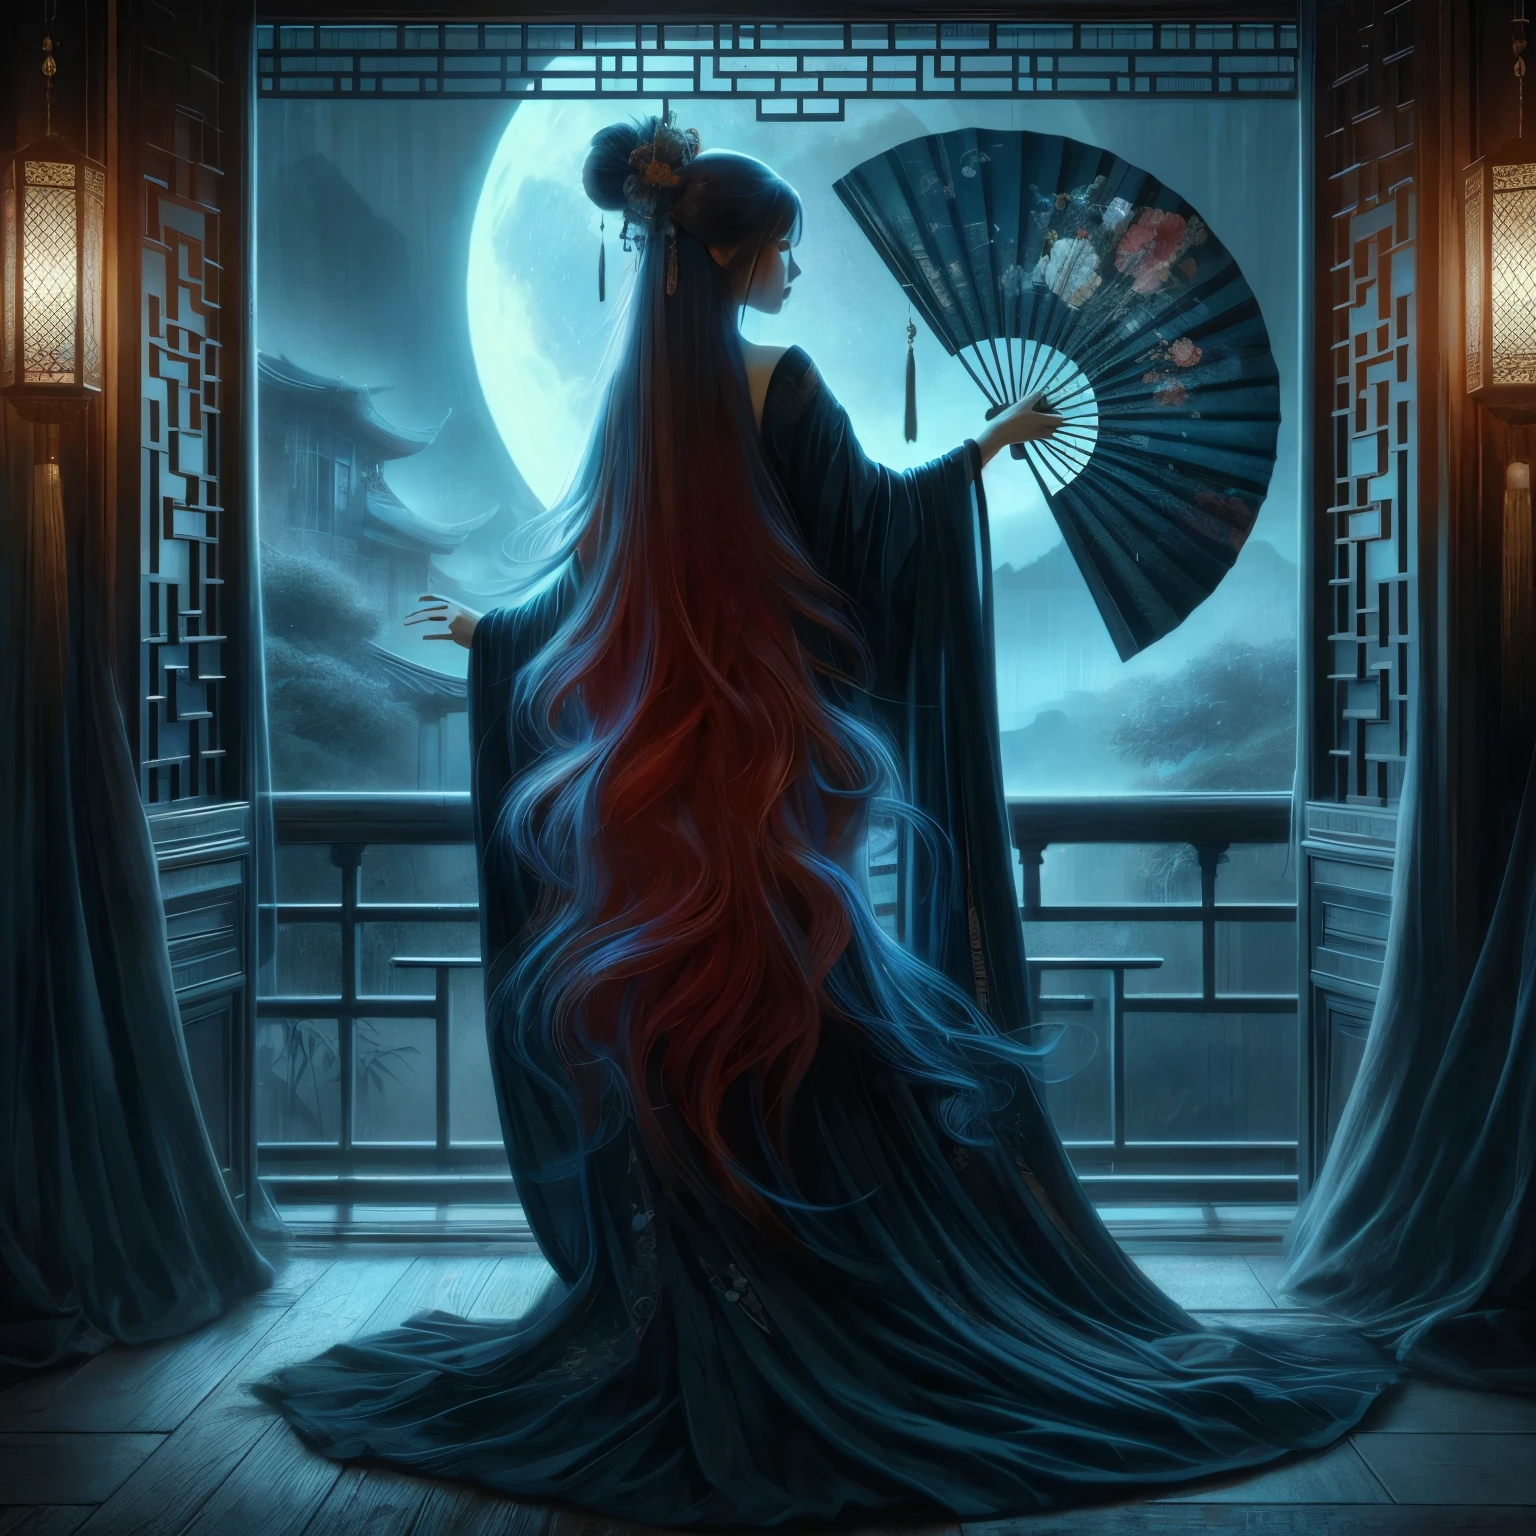 Uma mulher asiática ultra bonita, cabelo azul vermelho-dourado longo, segurando um leque de luta asiático longo, preto, muito ornamentado e antigo, com licor, vestindo um longo roupão preto de mulher chinesa, em uma sala escura onde o luar entra pela janela aberta da varanda, Jardim Chinês, céu noturno, Tinta preta, no estilo de Caravaggio, Fã Zhongzheng, e Da Vinci, Resolução 8K, hiperdetalhado, fotorrealista, um estilo de arte de pintura a óleo, Sfumato,